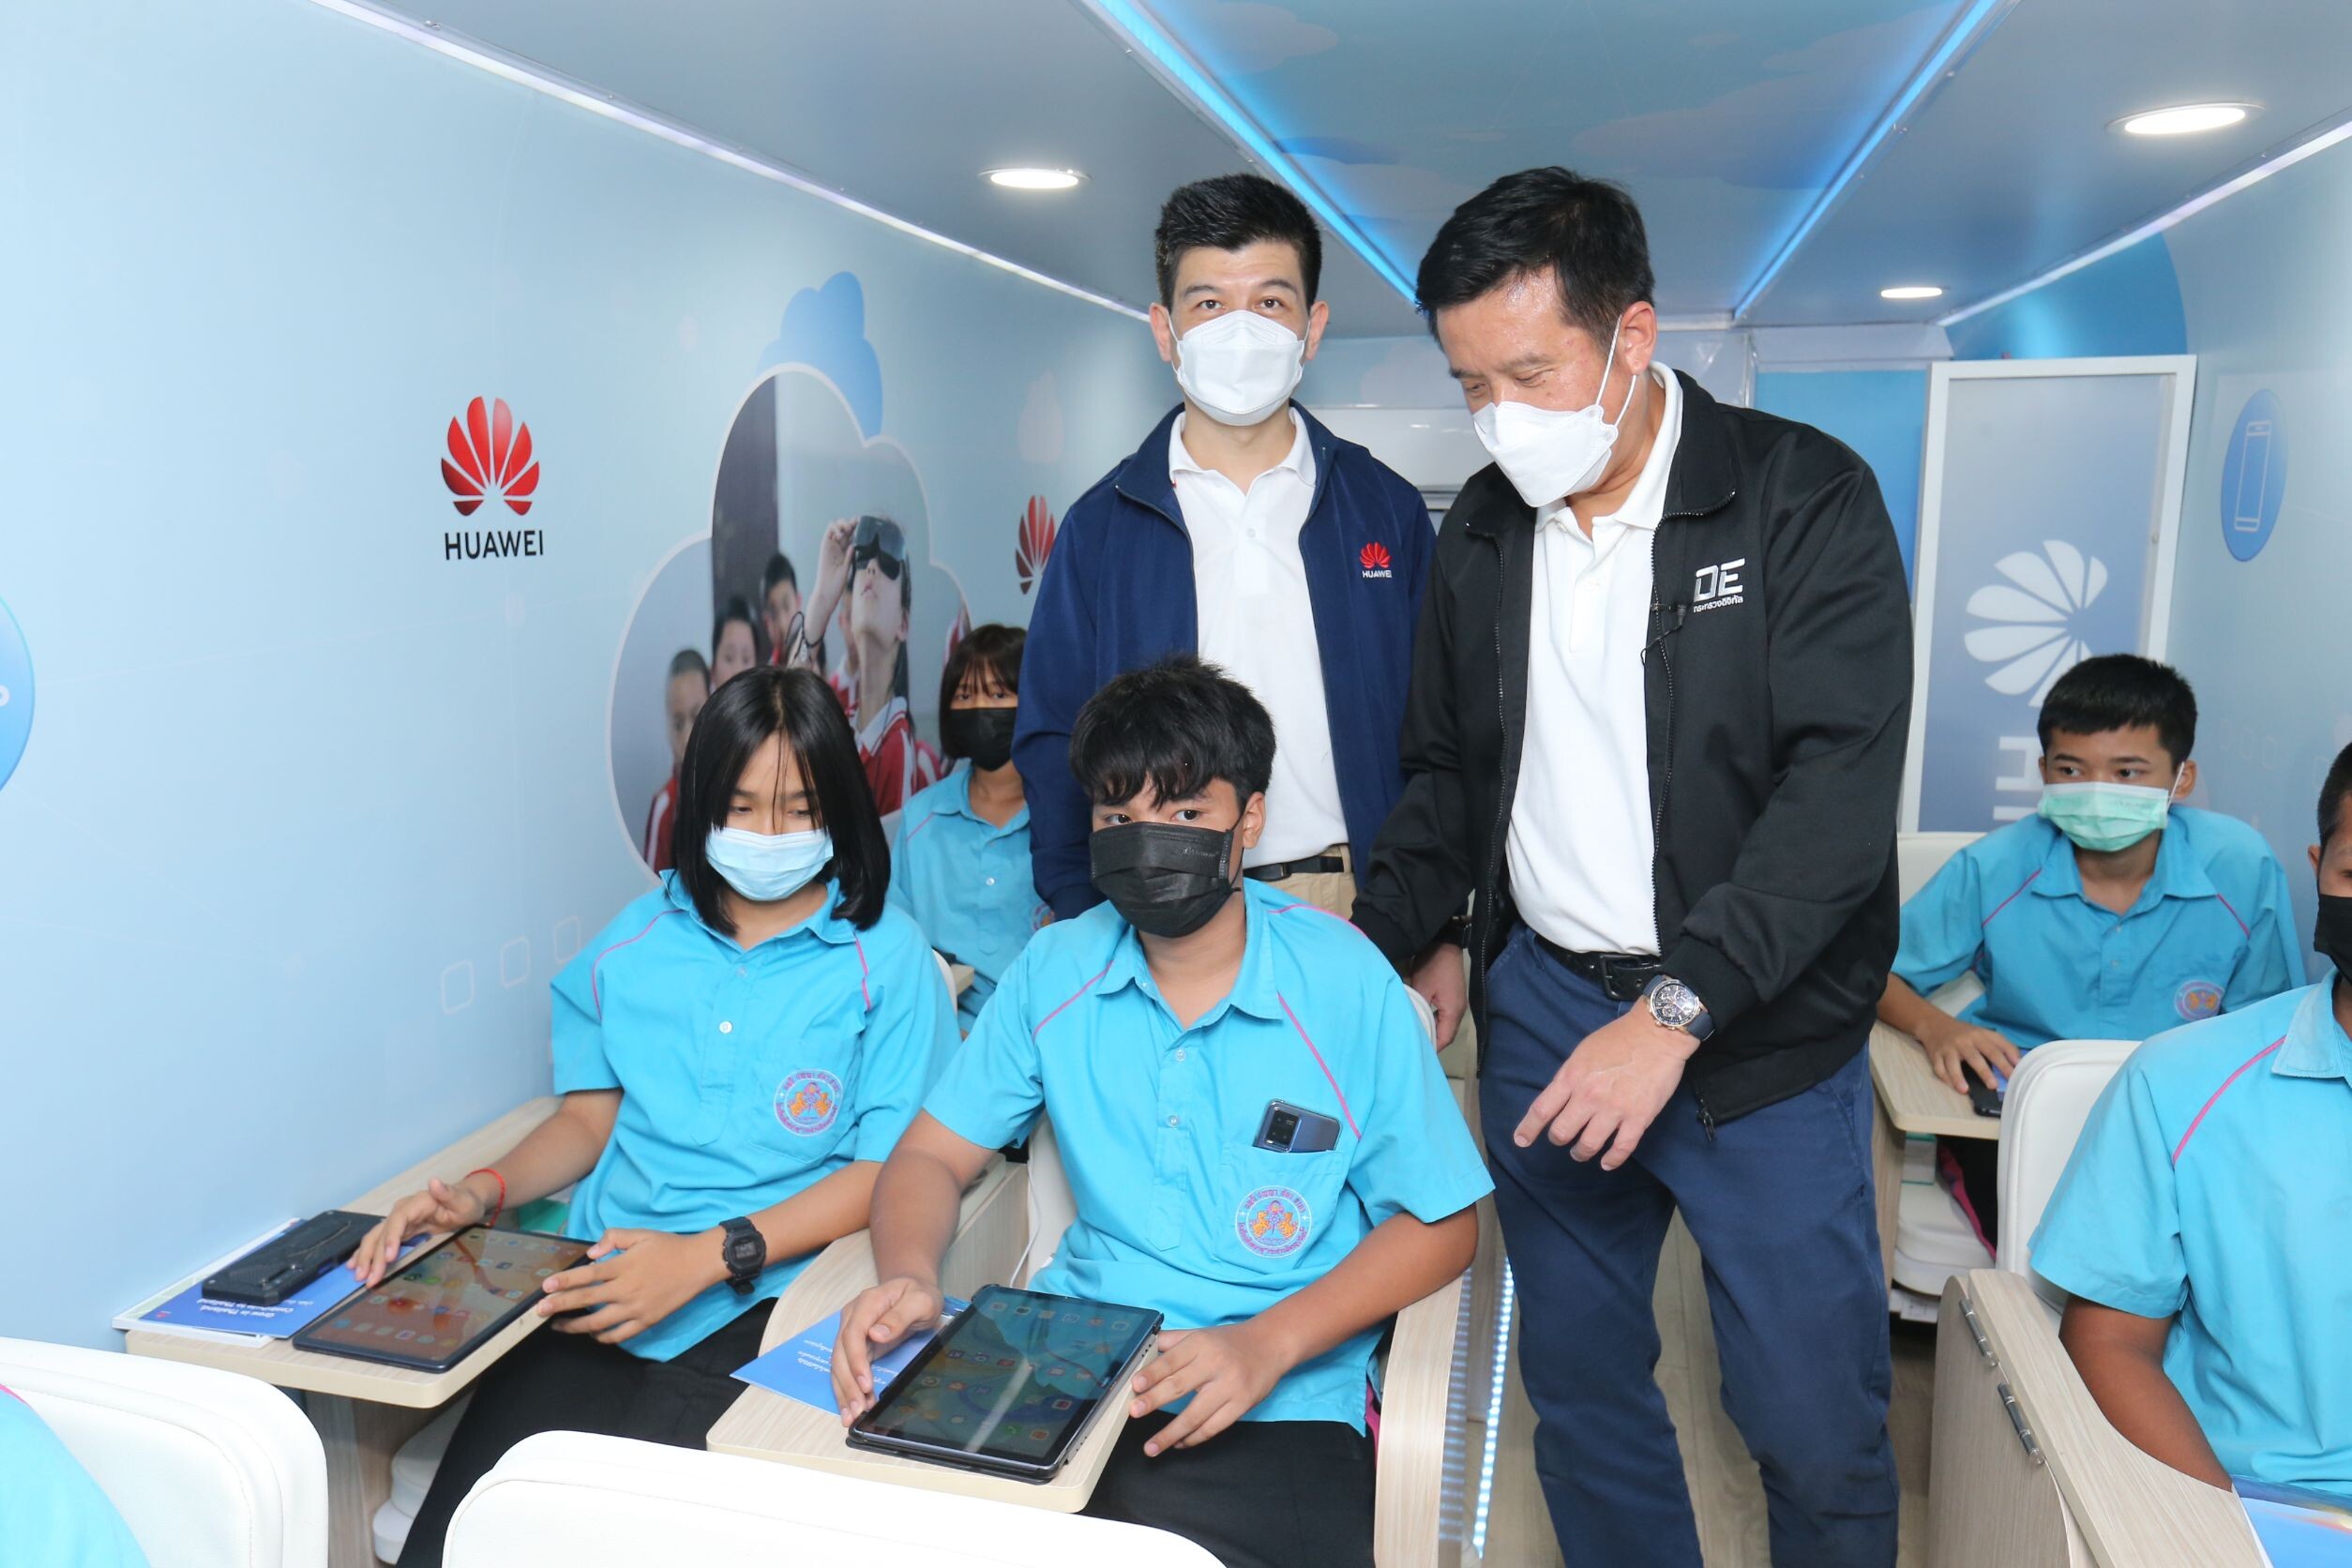 หัวเว่ยนำร่องโครงการ "รถดิจิทัล" เพื่อสังคม เร่งสร้างความเท่าเทียมด้านทักษะดิจิทัล ยกระดับการศึกษาไทยด้วยเทคโนโลยี